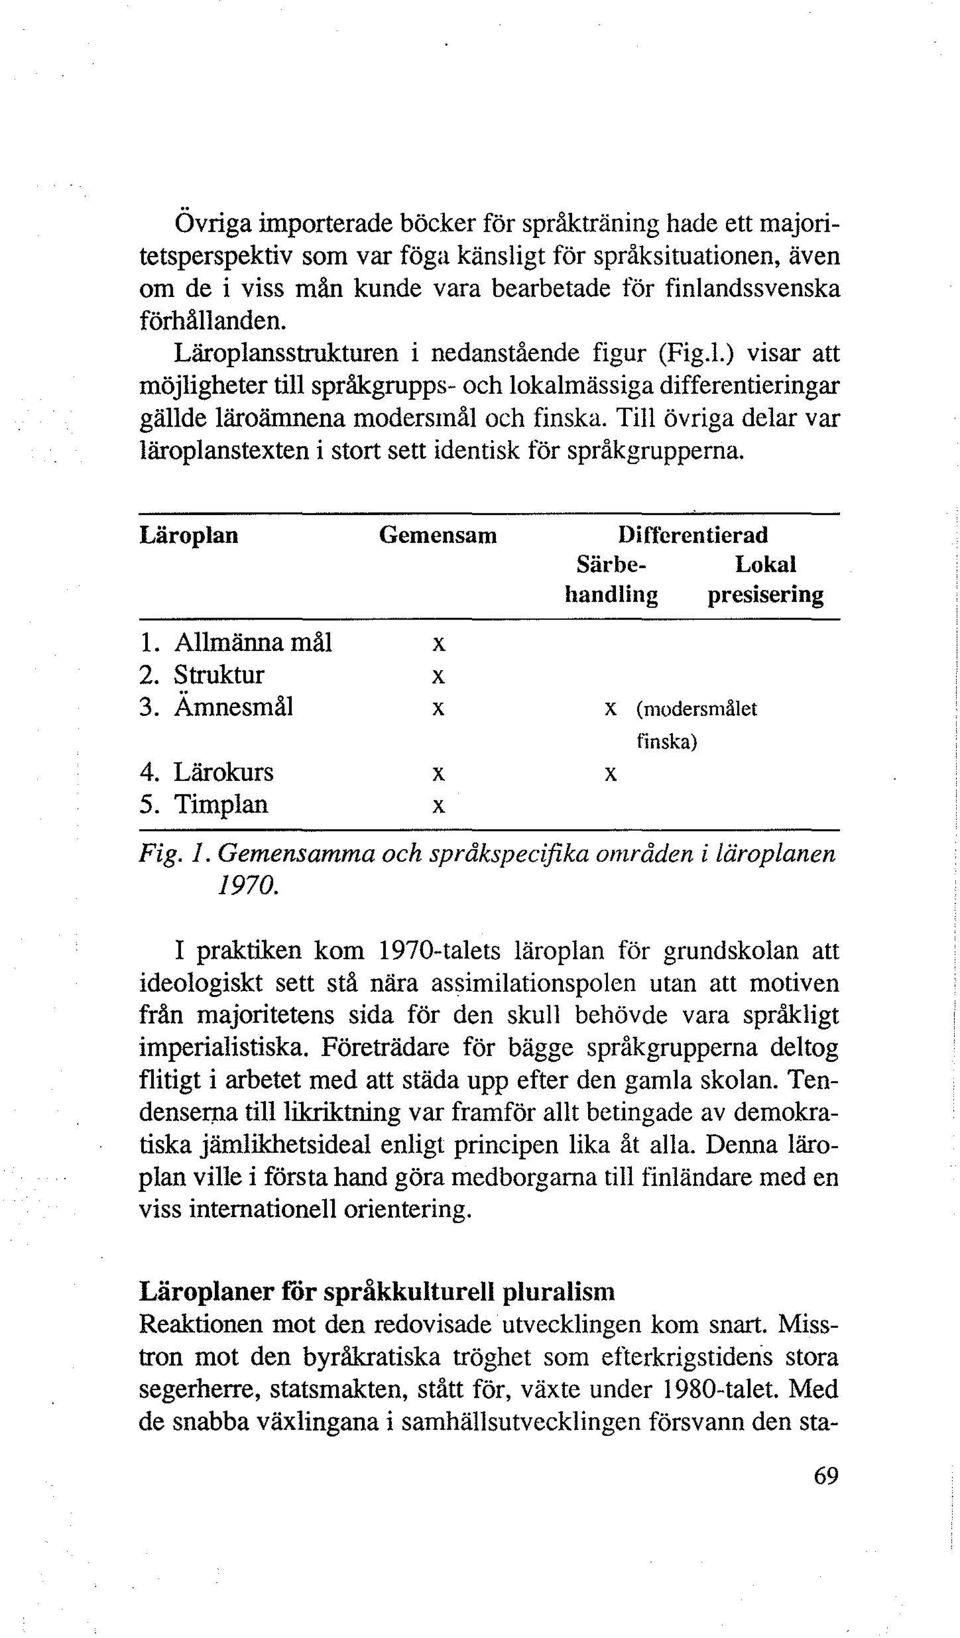 Till övriga delar var läroplanstexten i stort sett identisk för språkgrupperna. Läroplan 1. Allmänna mål 2. Struktur 3. Ämnesmål 4. Lärokurs 5.